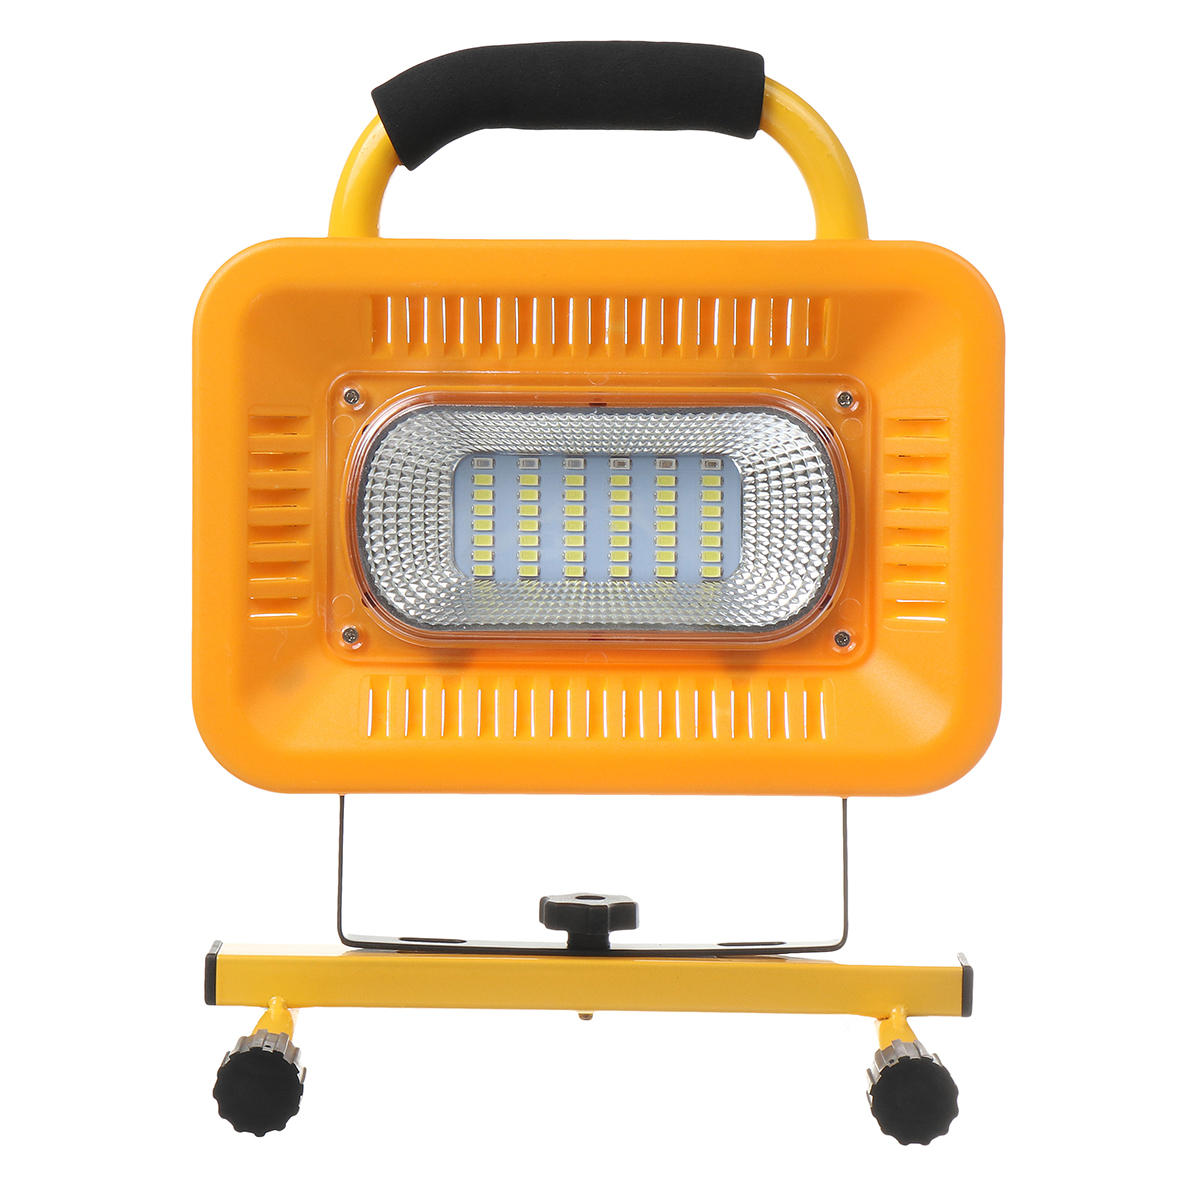 Đèn cắm trại LED 48 đèn chống nước 3 chế độ làm việc, ngân hàng điện cho du lịch ngoài trời.